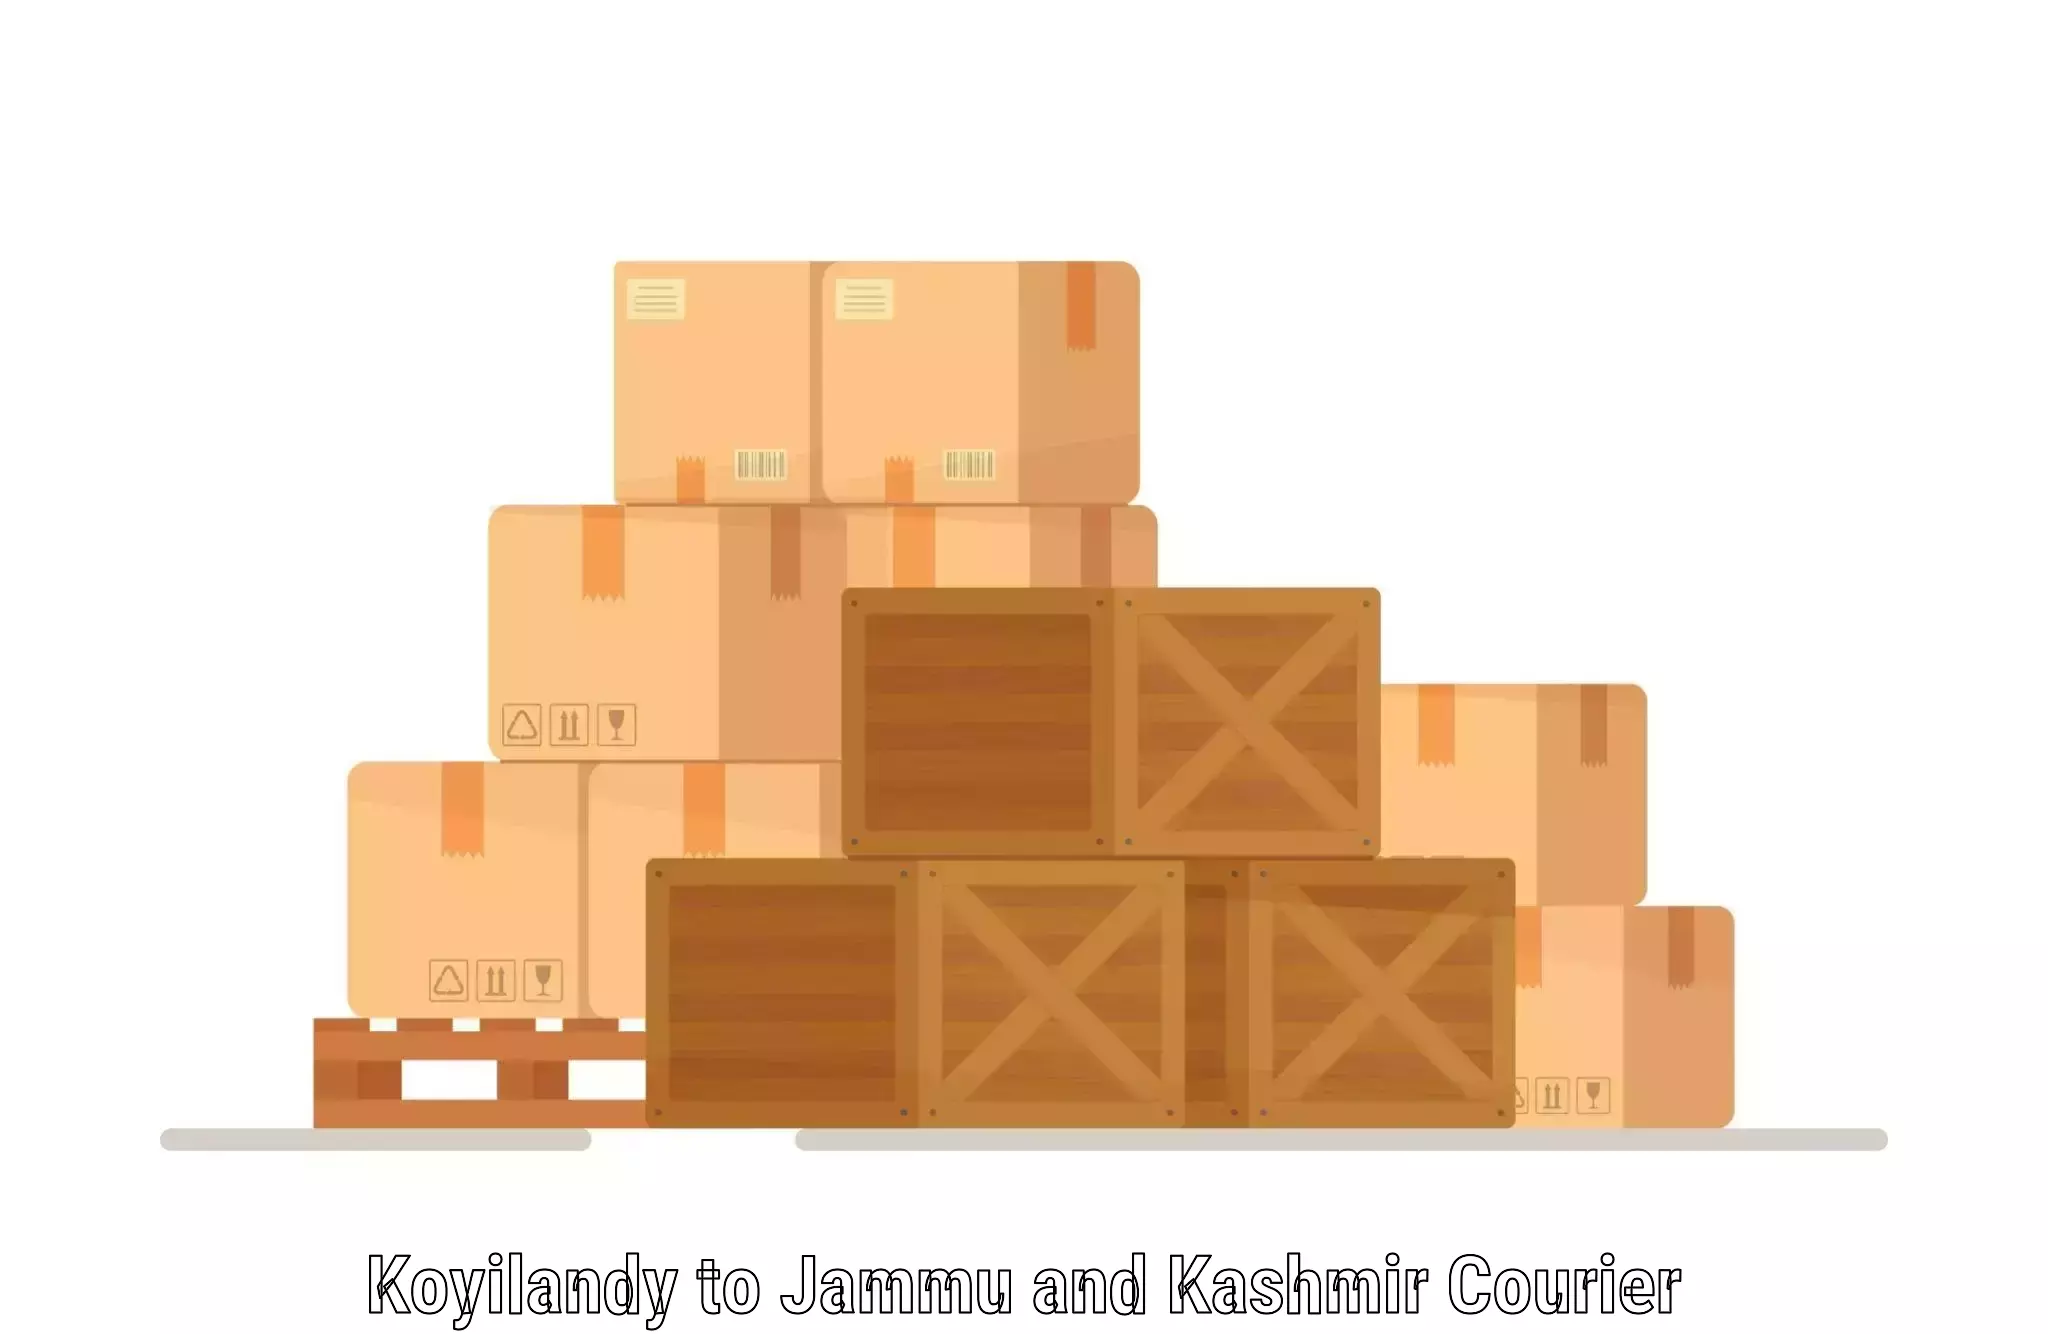 Large package courier Koyilandy to Kishtwar